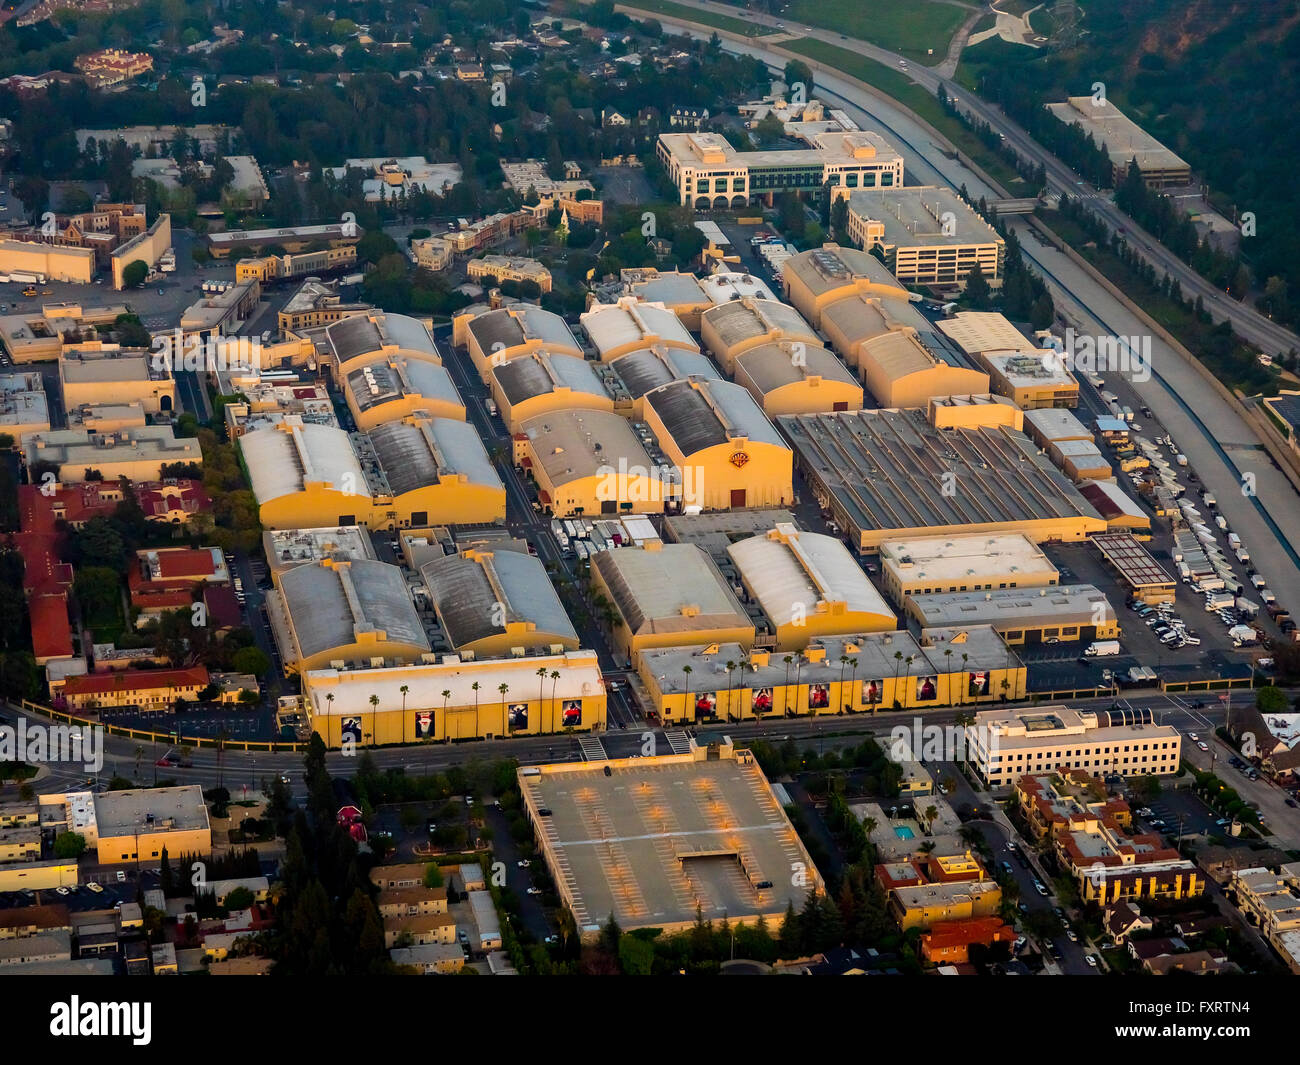 Aerial view, Warner Bros. Studios, Studio City, San Fernando Valley, Los Angeles, Los Angeles County, California, USA, Stock Photo